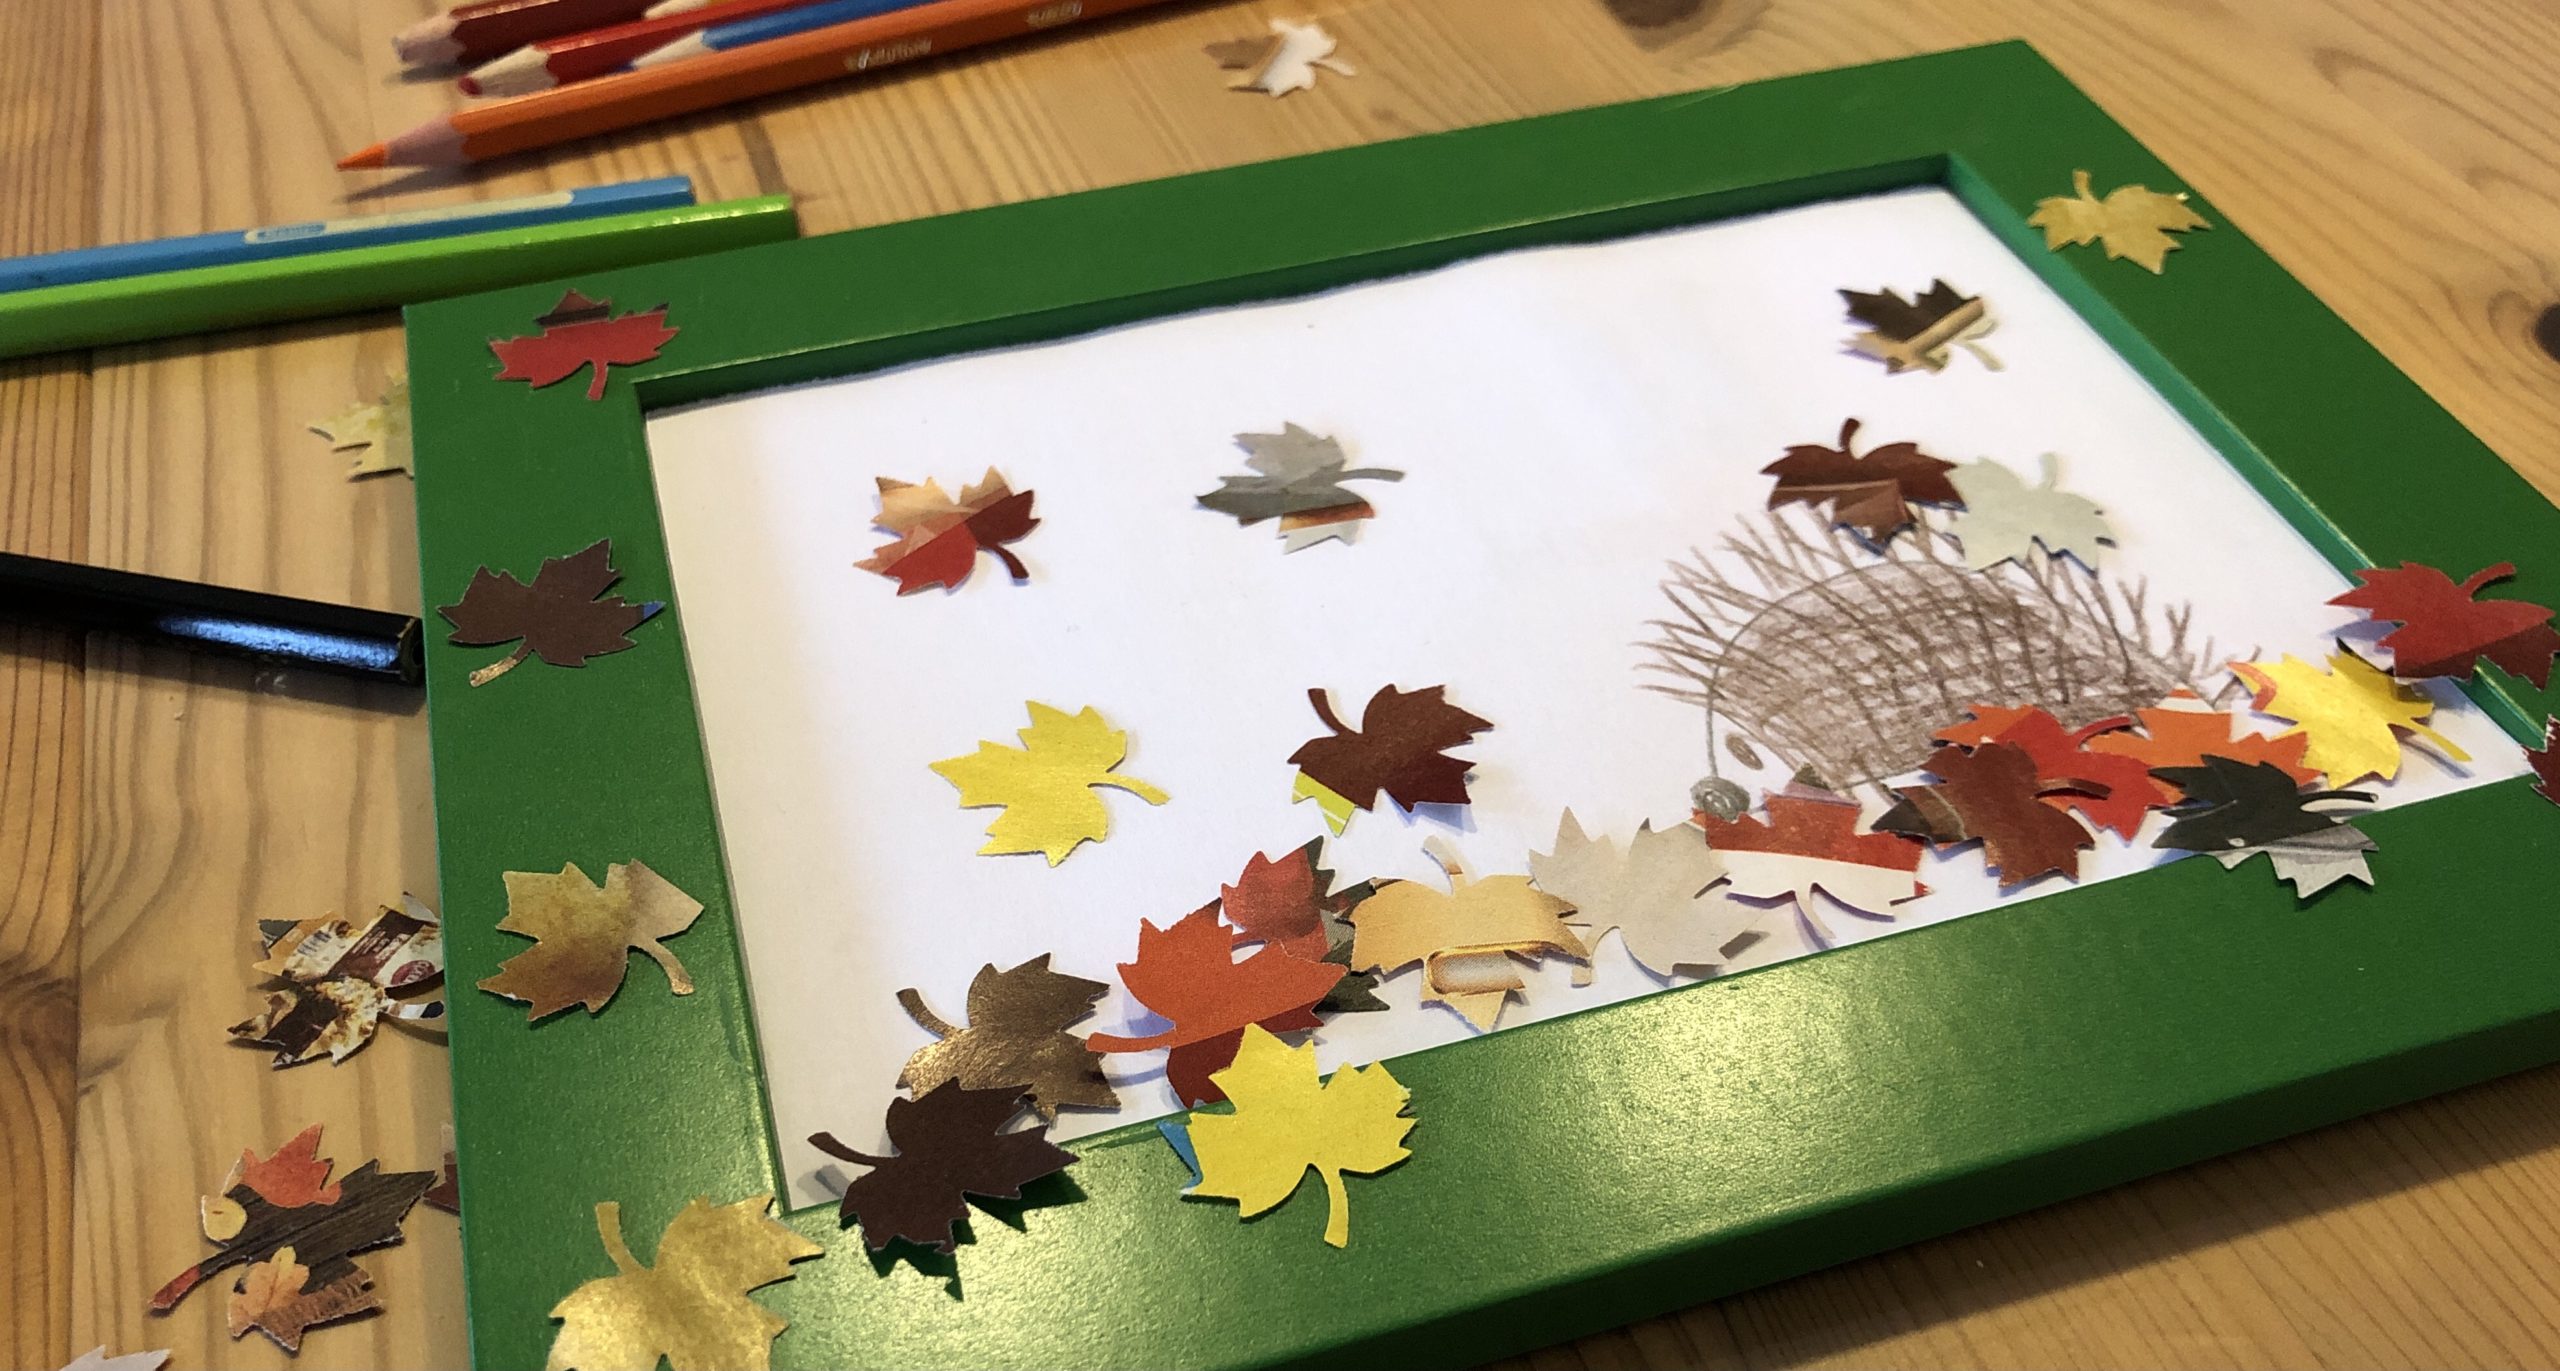 Bild zum Schritt 9 für das Bastel- und DIY-Abenteuer für Kinder: 'Jetzt klebt die Blätter um den Igel herum. Klebt einen...'